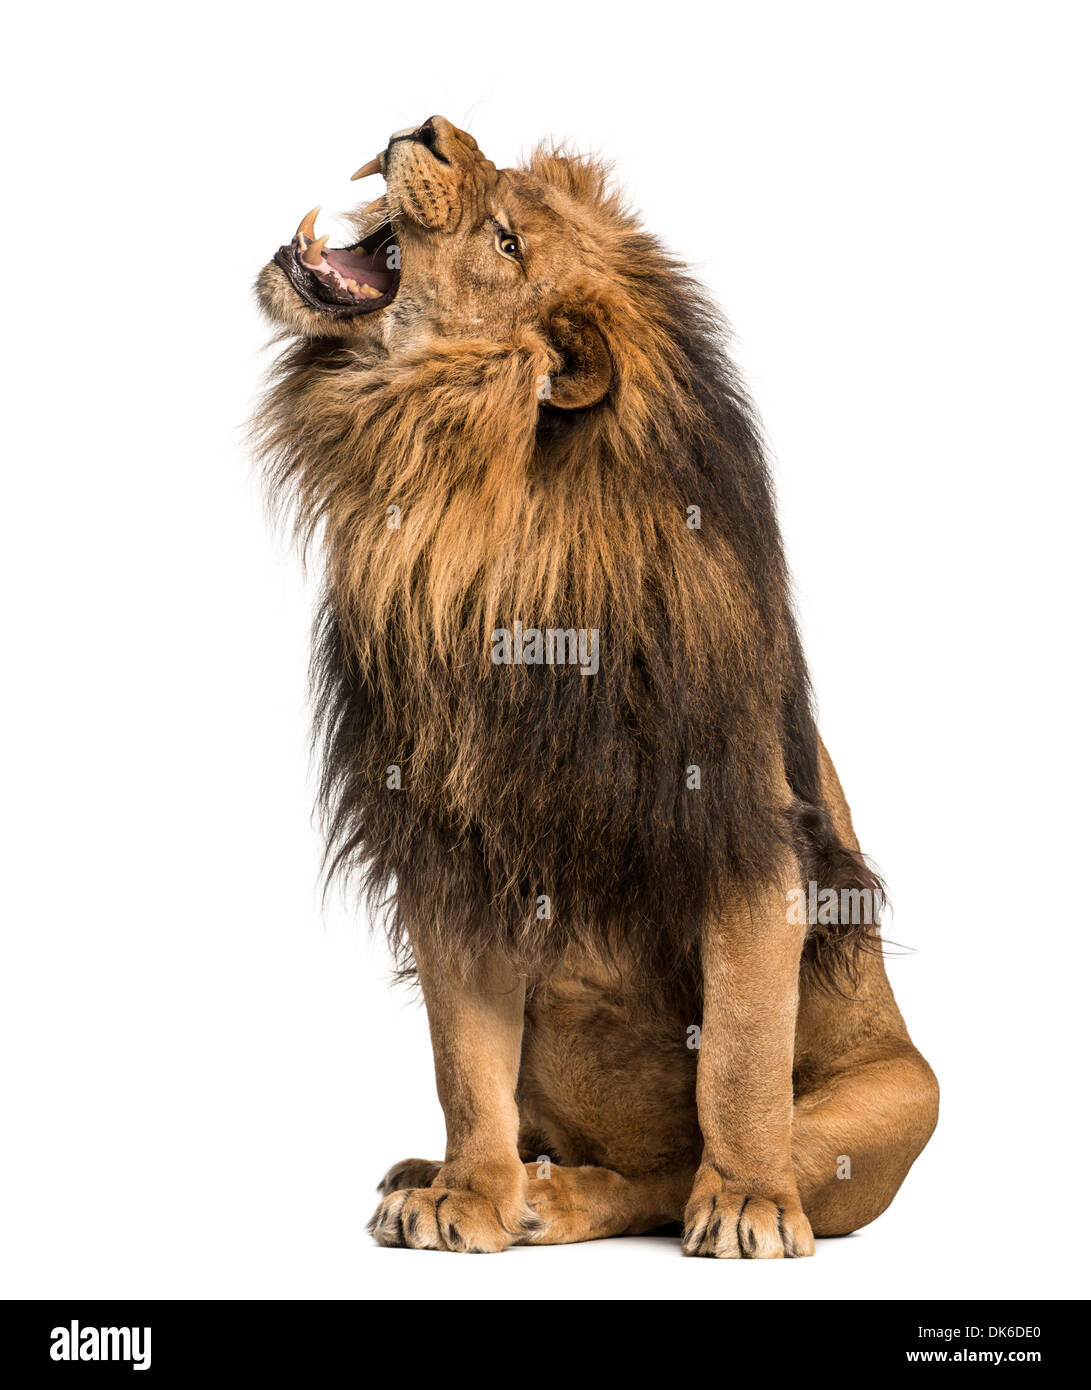 Lion rugissant, assis, Panthera leo, 10 ans, contre fond blanc Banque D'Images